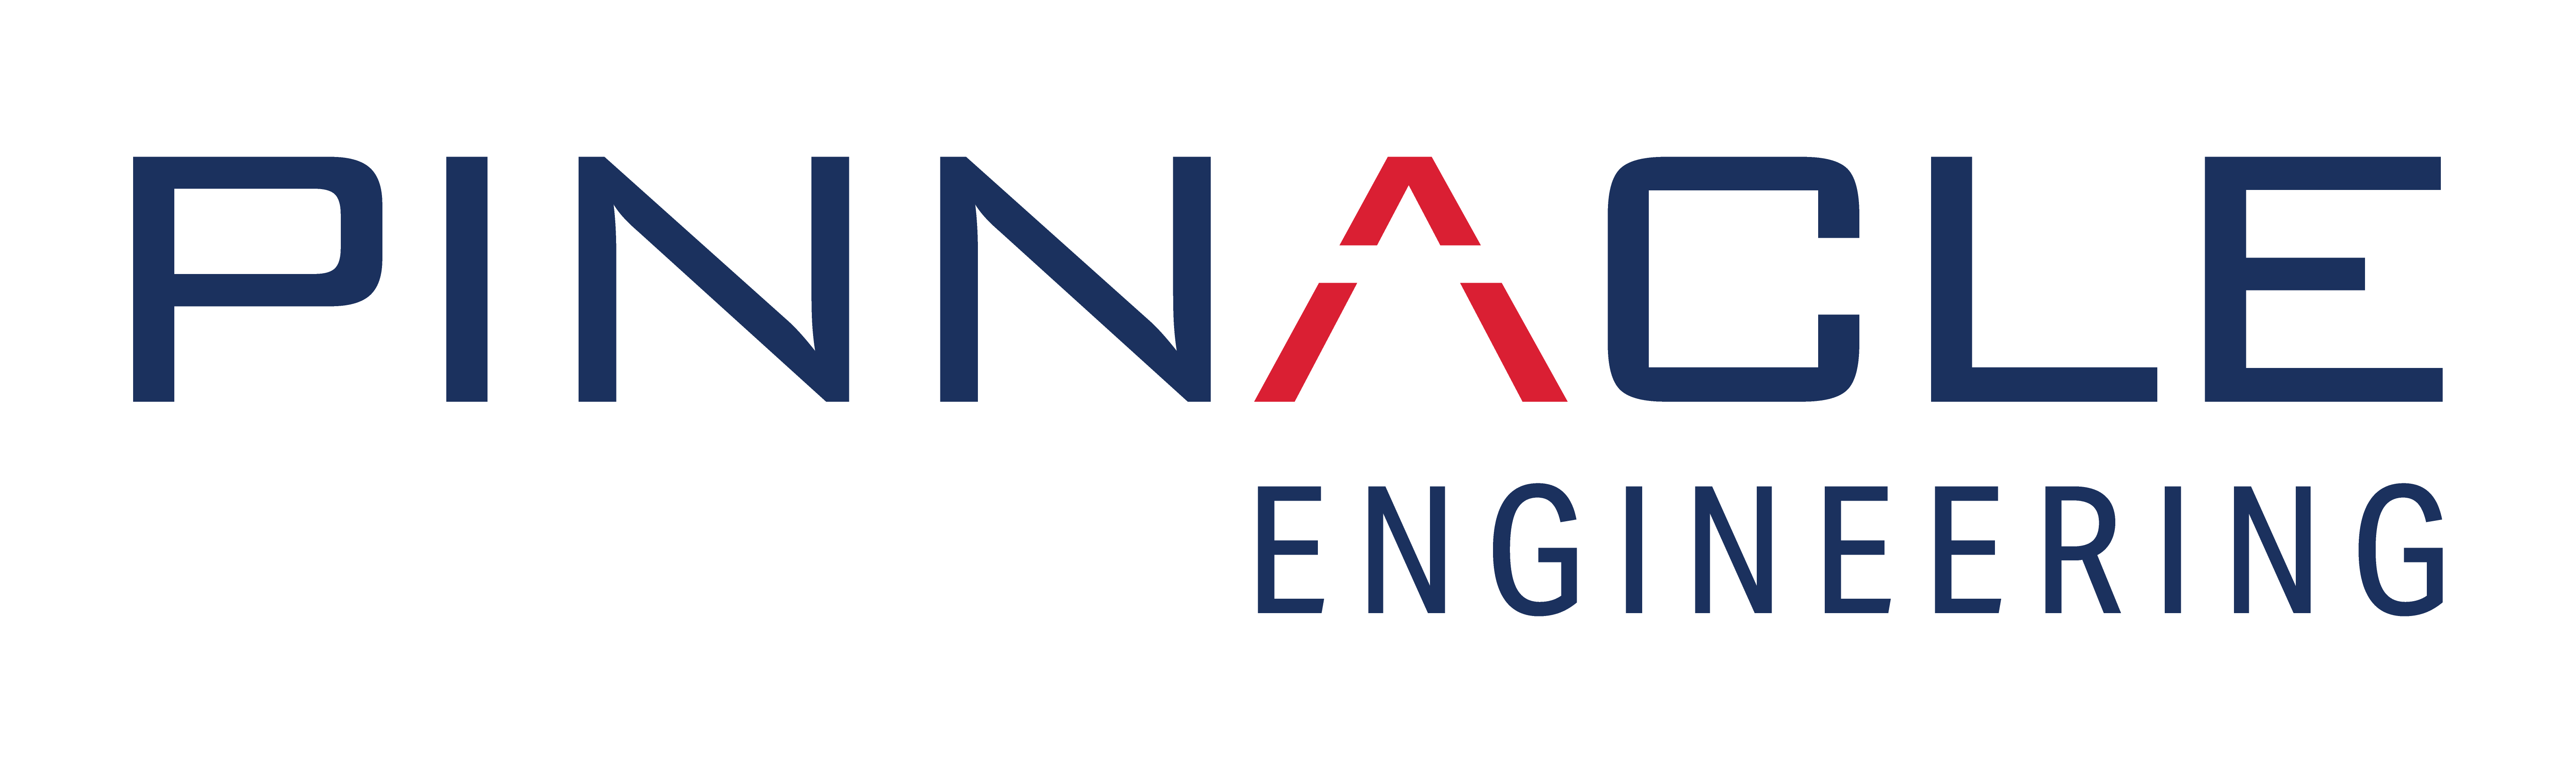 pinnacle_engineering_logo